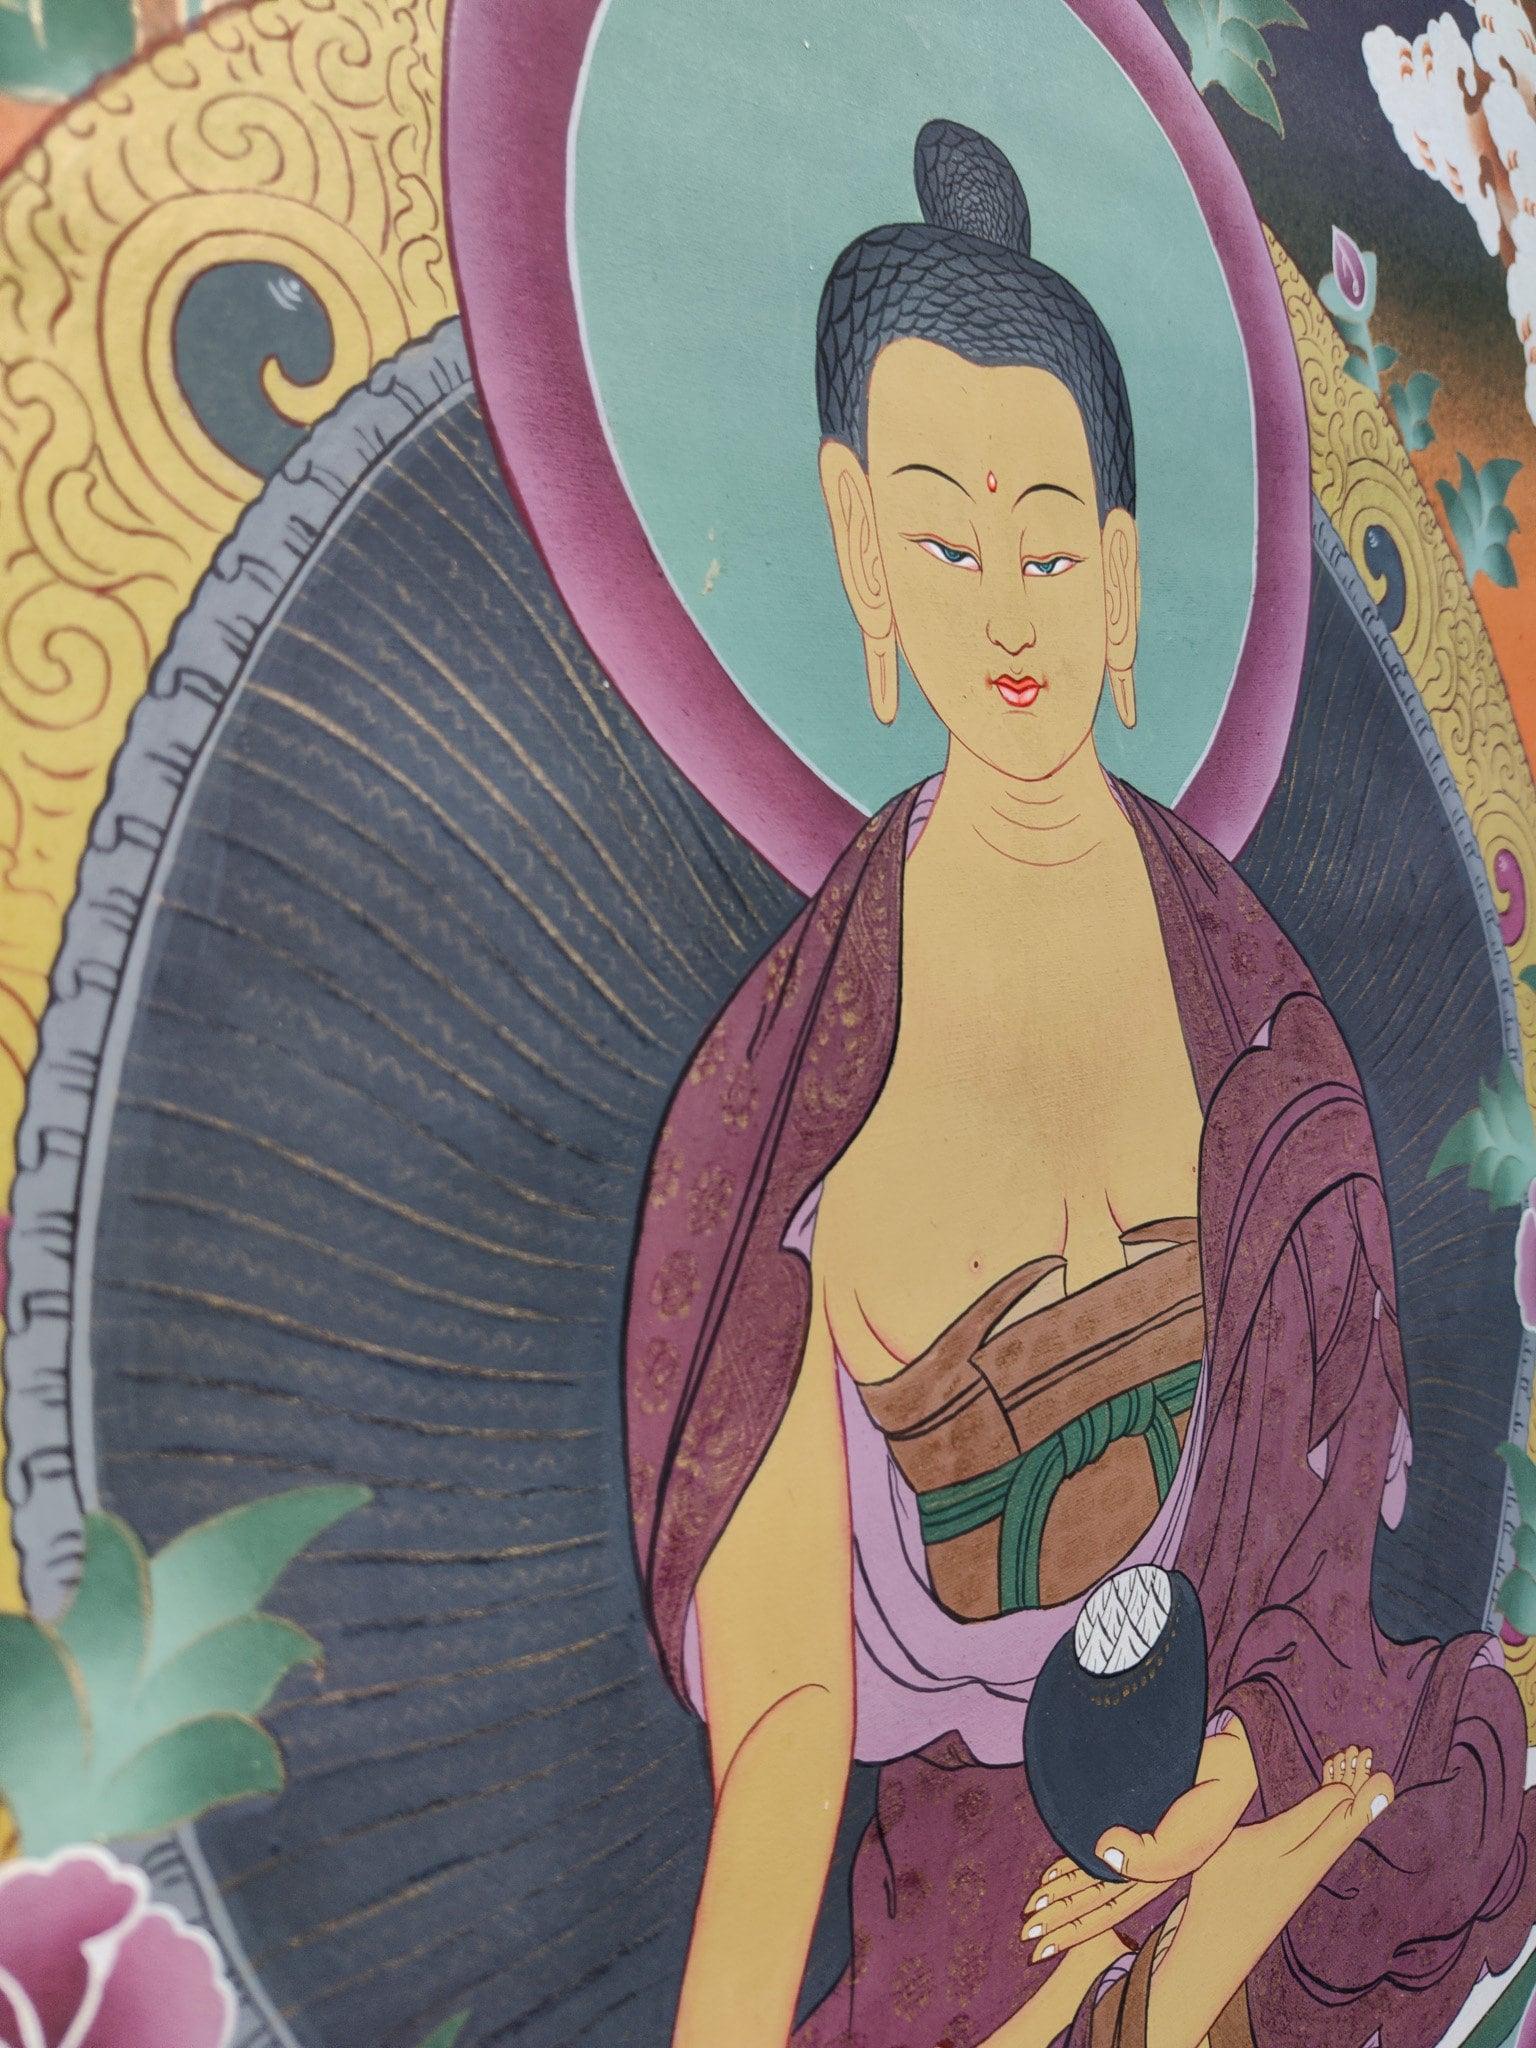 Shakyamuni Buddha from Himalayas